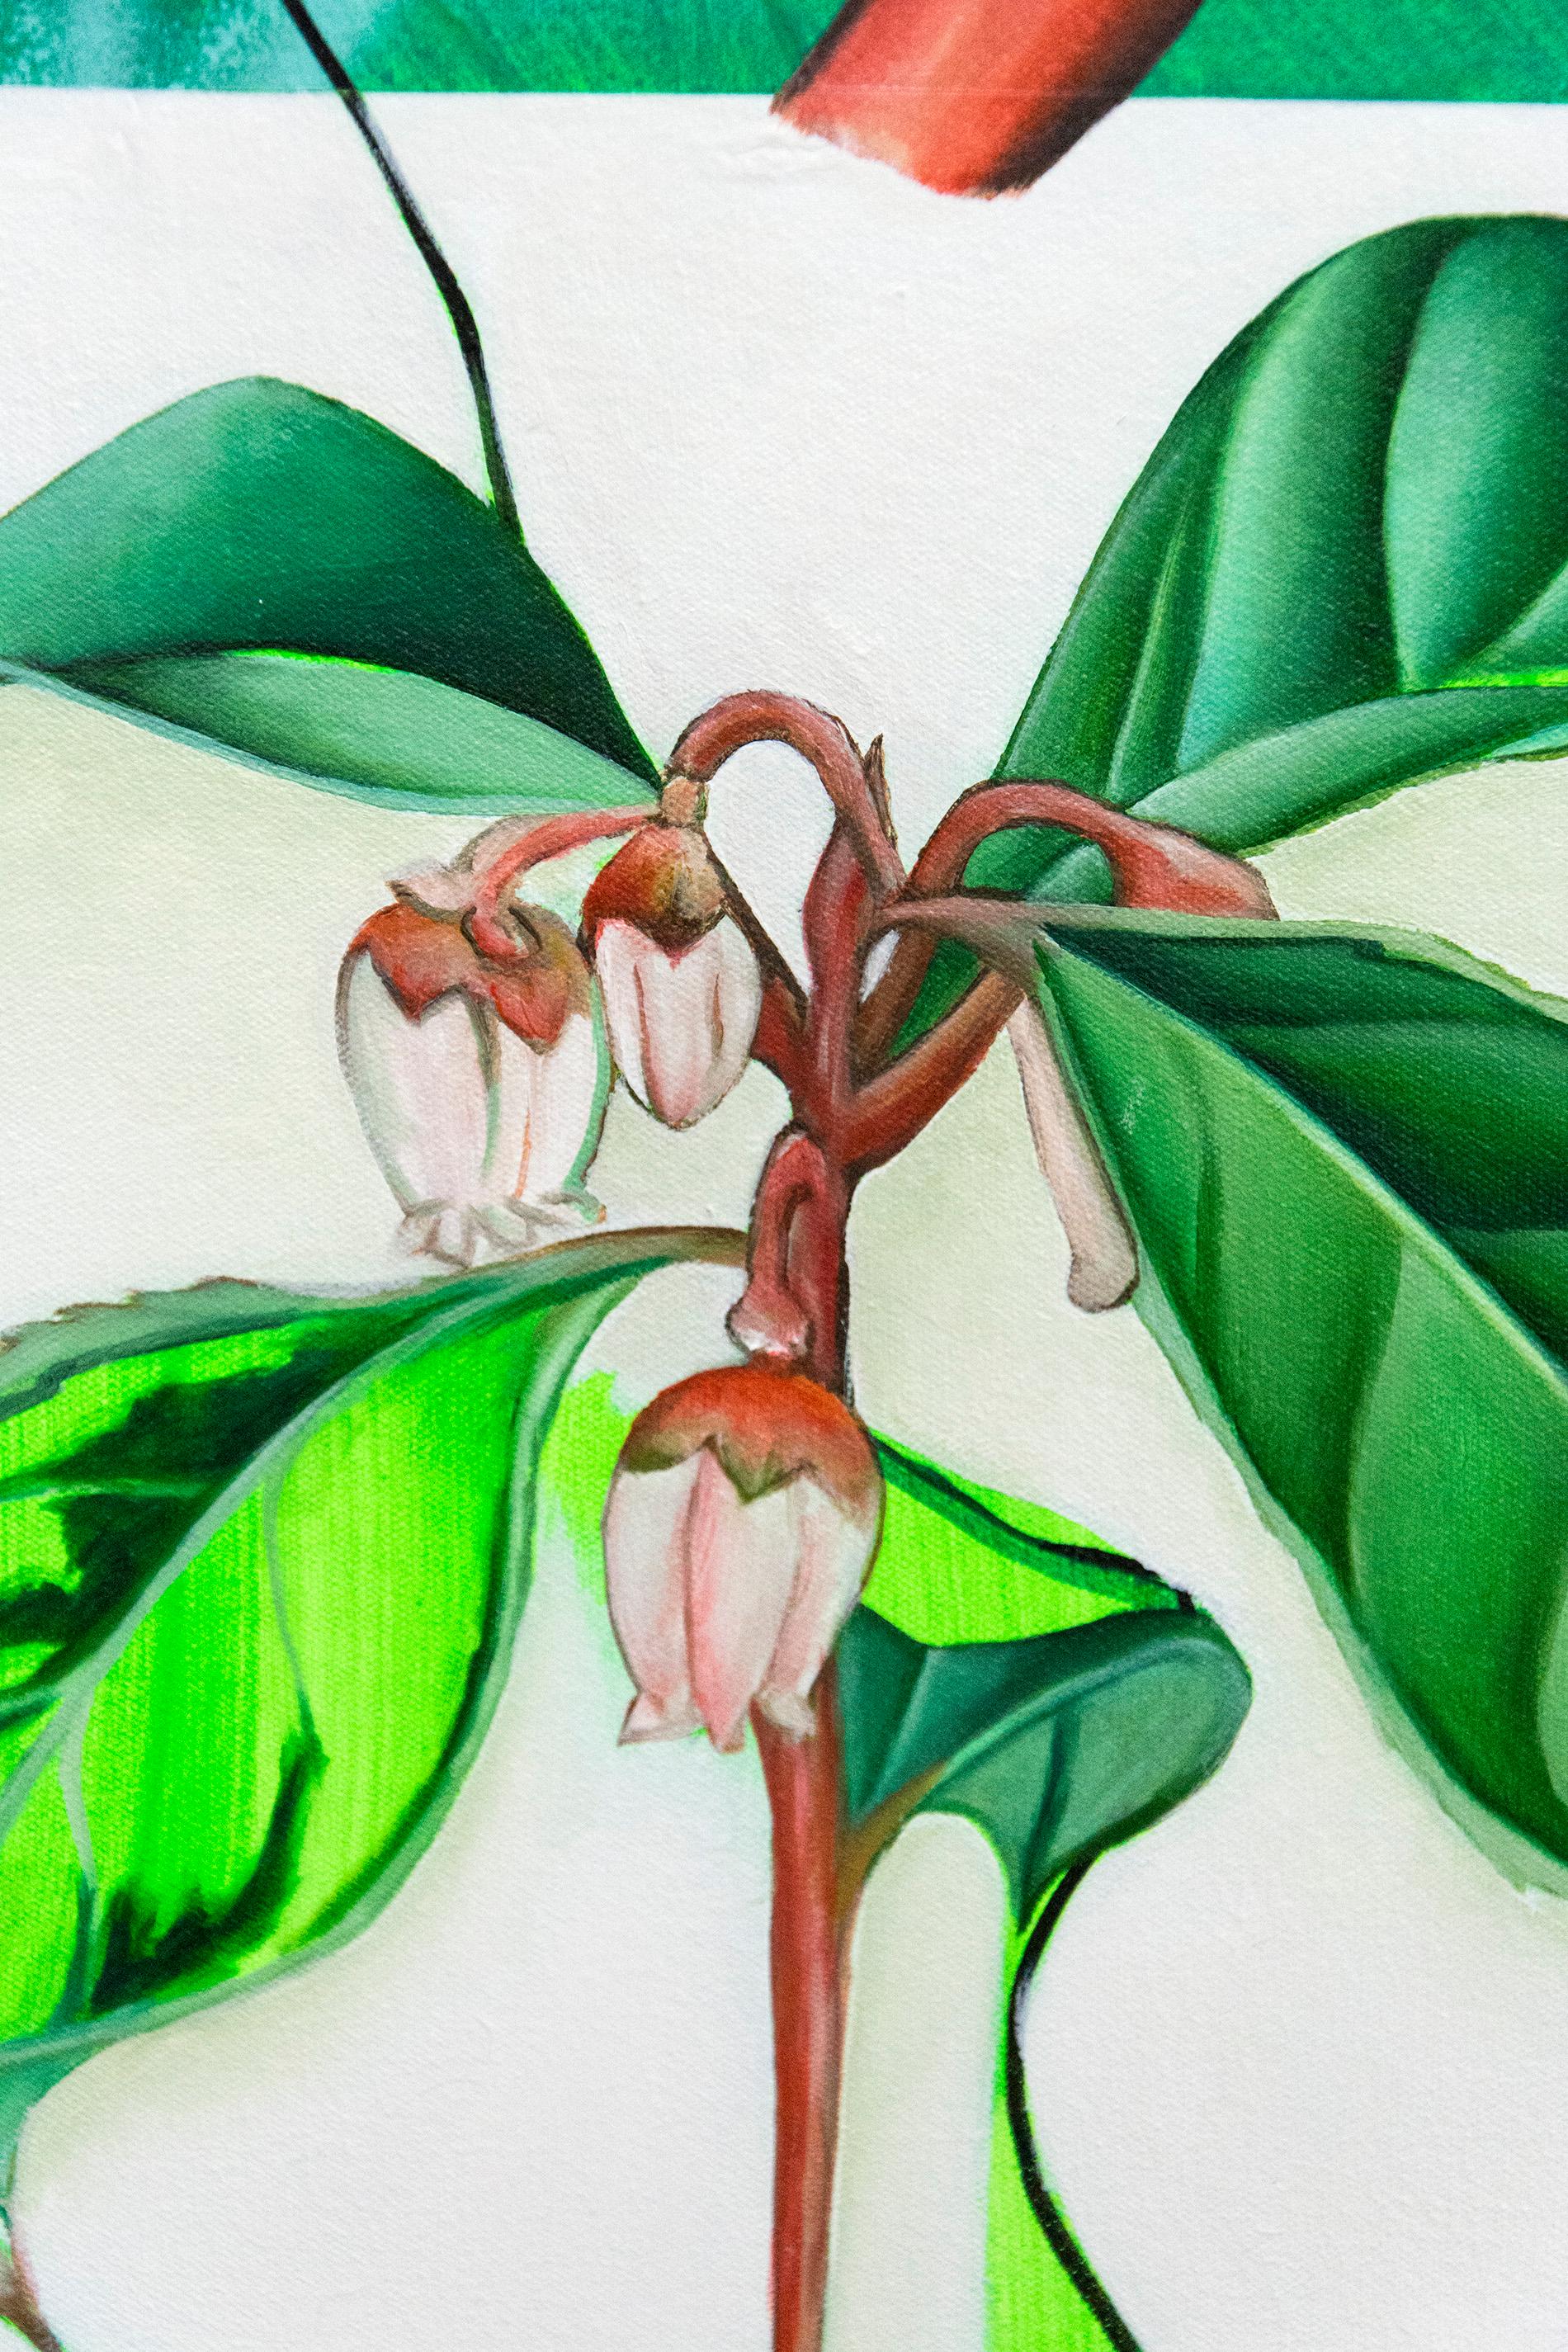 Trientalis – Inspiriert von Erzählungen und botanischen Zeichnungen von Frauen im Naturgewerbe (Grau), Still-Life Painting, von Fiona Ackerman